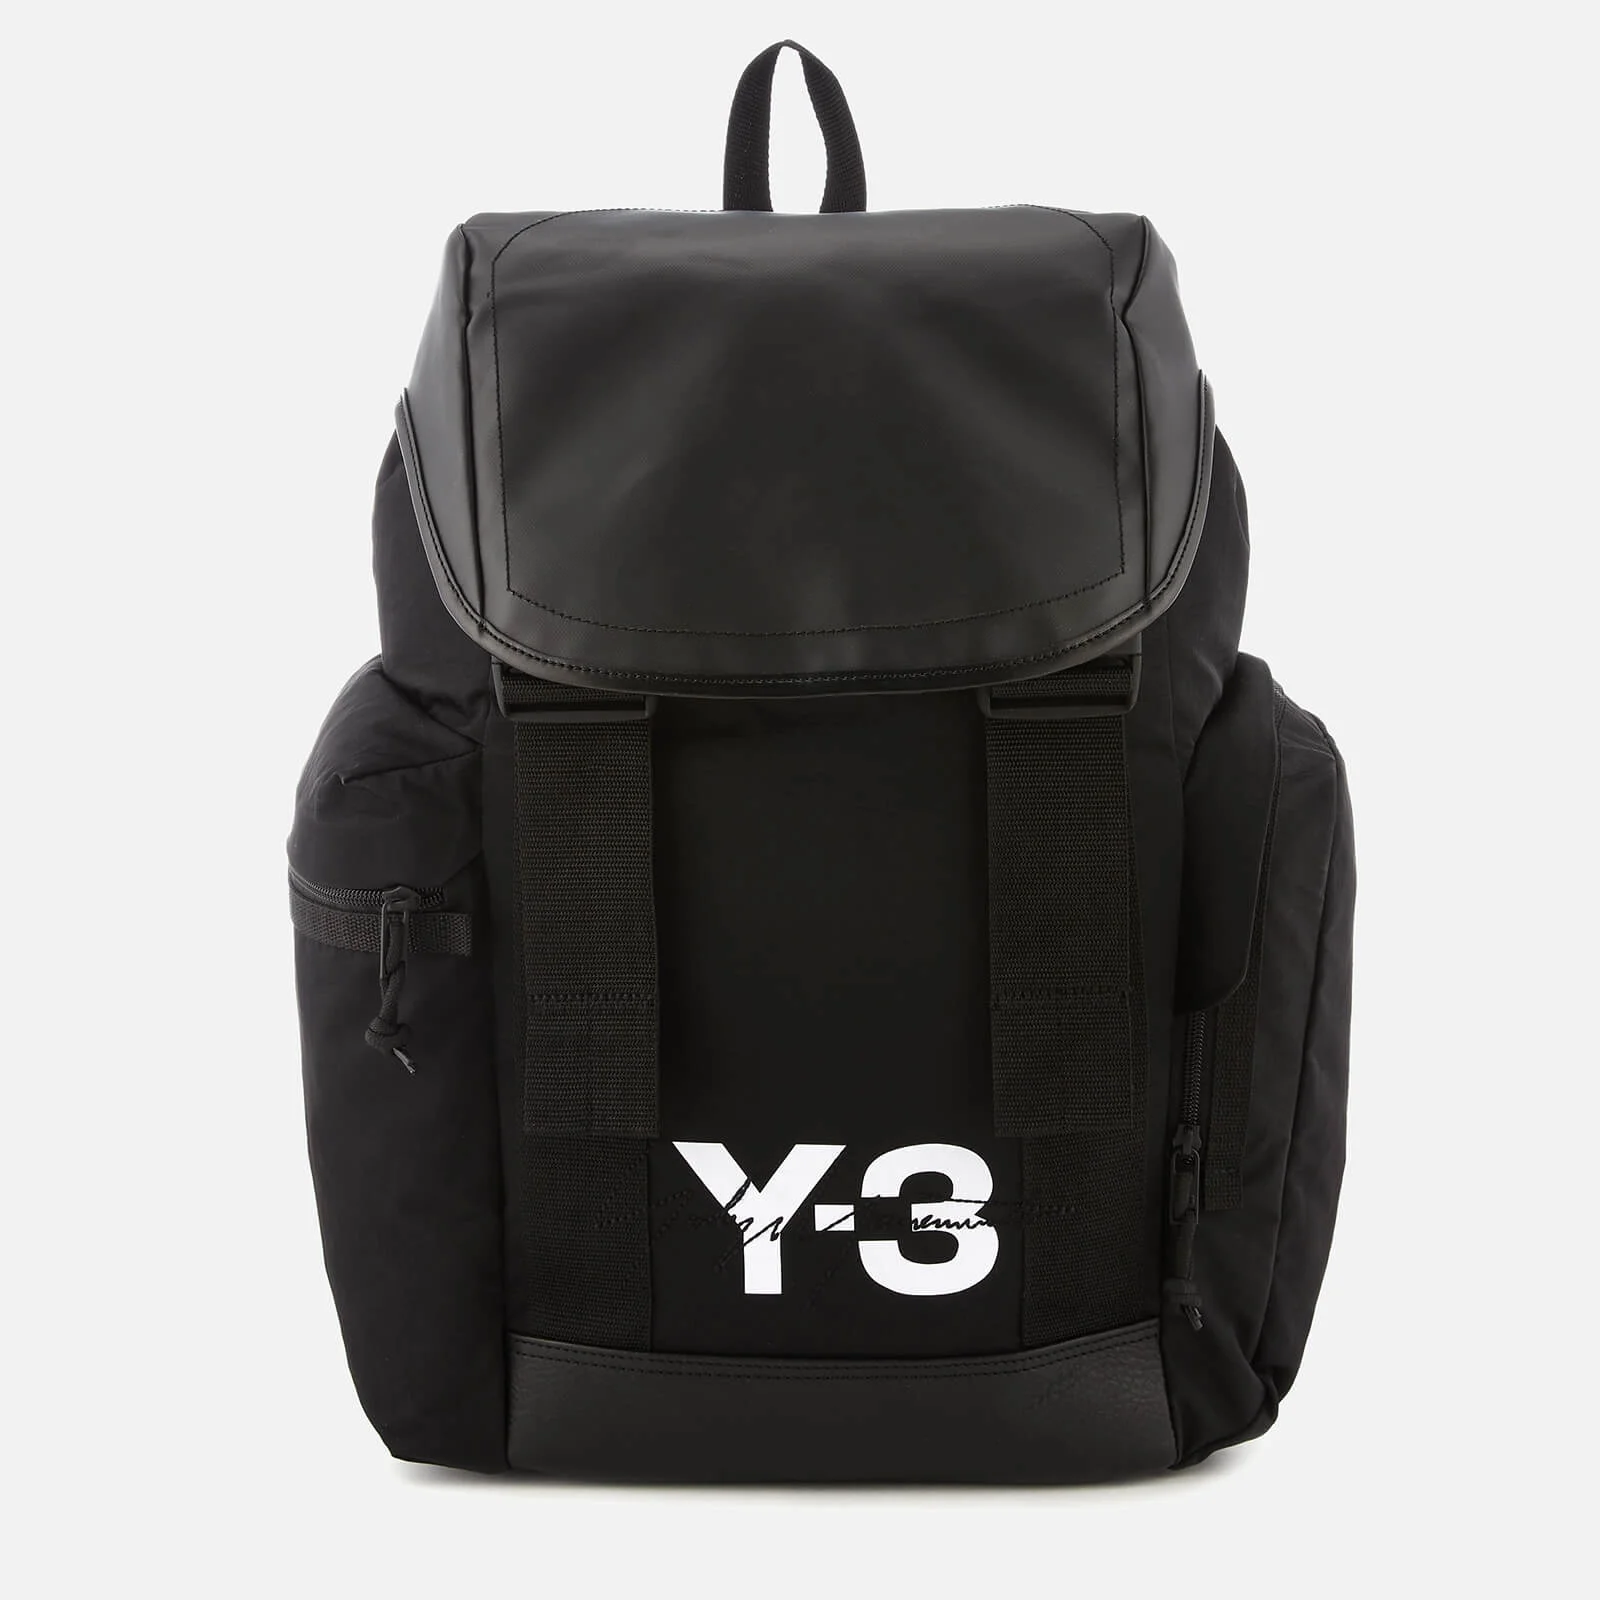 Y-3 Men's Mobility Bag - Black Image 1